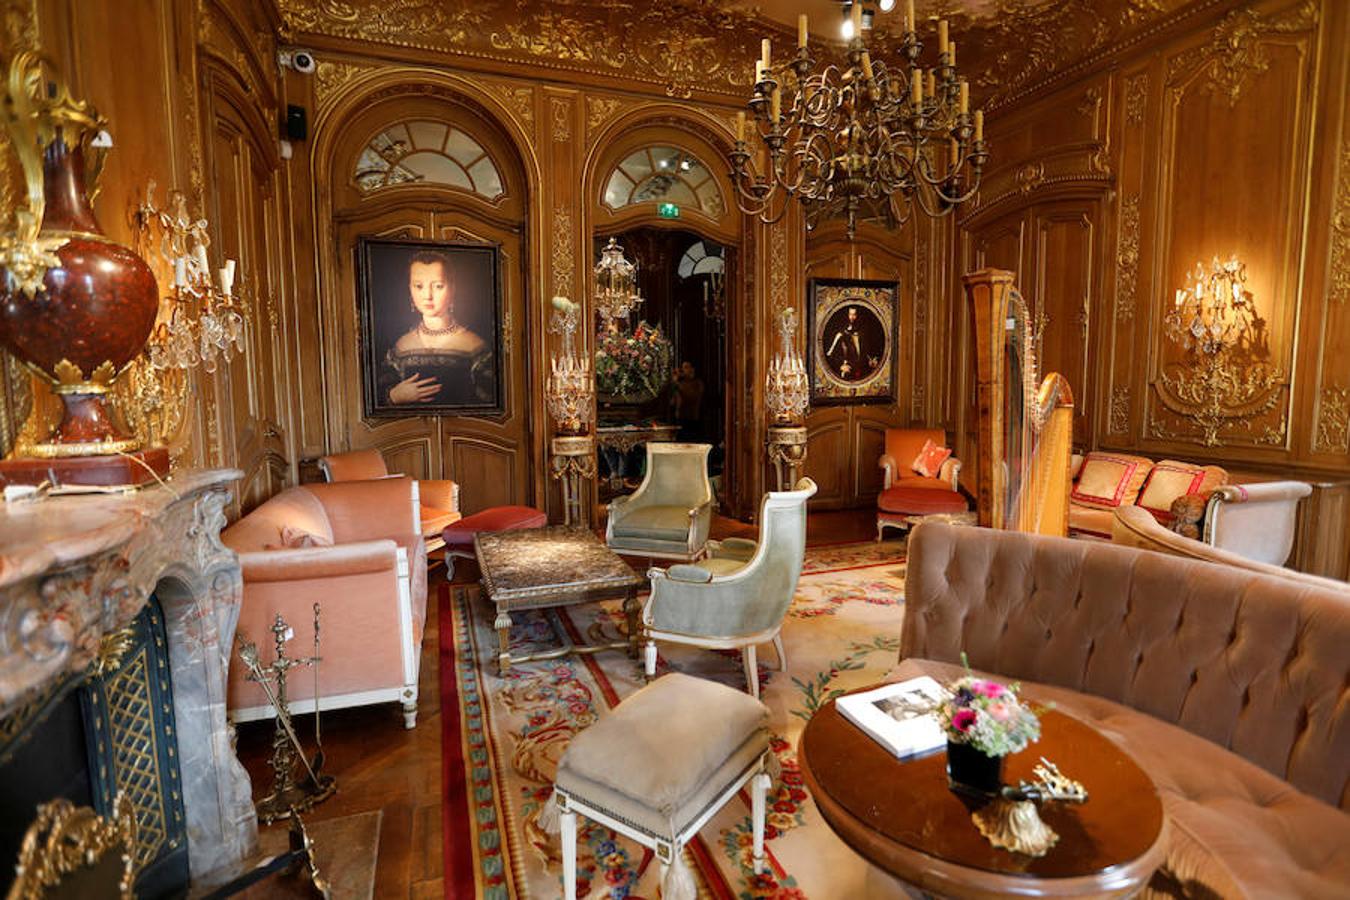 Desde una bañera del siglo XIX hasta unas zapatillas con su insignia, el legendario Ritz de París venderá a partir de este martes (y hasta el próximo 21 de abril) unos 10.000 objetos y muebles que marcaron su historia, en una subasta para fanáticos del glamur. Reabierto a mediados de 2016 después de cuatro años de obras, el hotel, cuya reputación se ha construido a base de albergar clientes de la talla de Ernest Hemingway, Marcel Proust y Coco Chanel, ha decidido desprenderse de buena parte de su antiguo mobiliario. Las estimaciones de la subasta organizada por Artcurial oscilan entre los 100 euros para unos alzapaños o unos plafones, hasta 10.000 euros para un par de monumentales esculturas de ninfas en bronce, que decoraban antaño el vestíbulo.